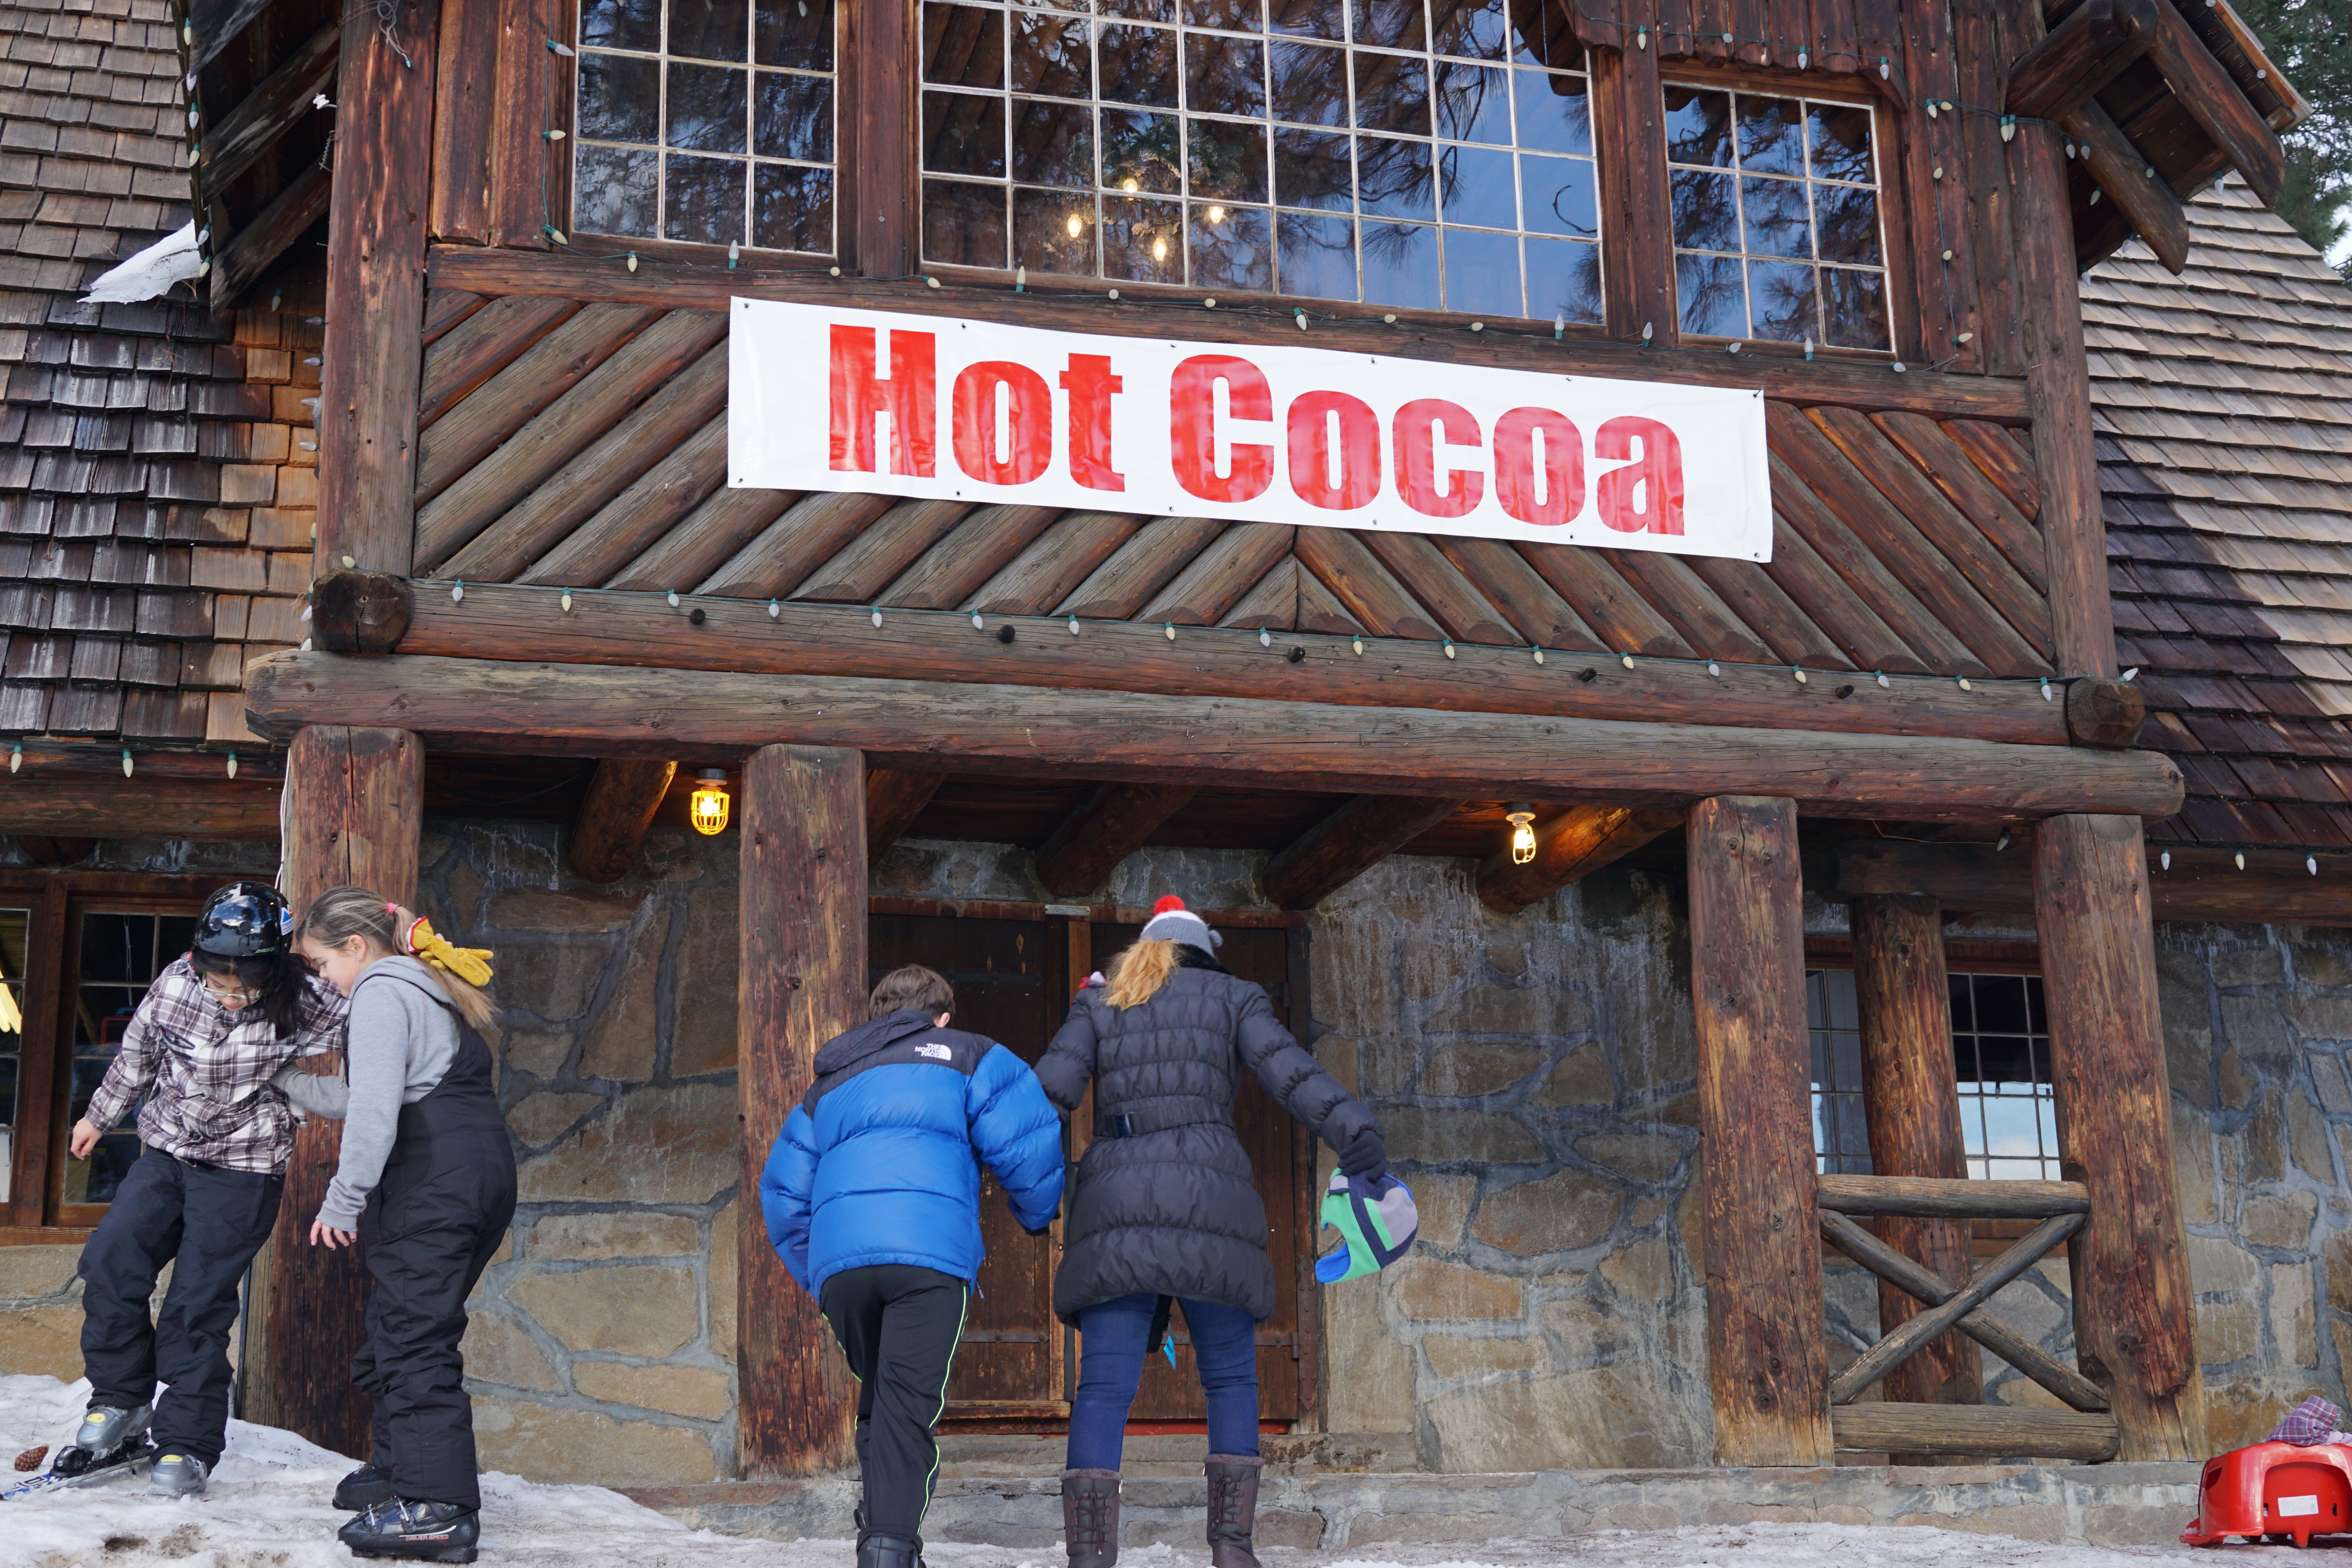 Ski Hill hot cocoa